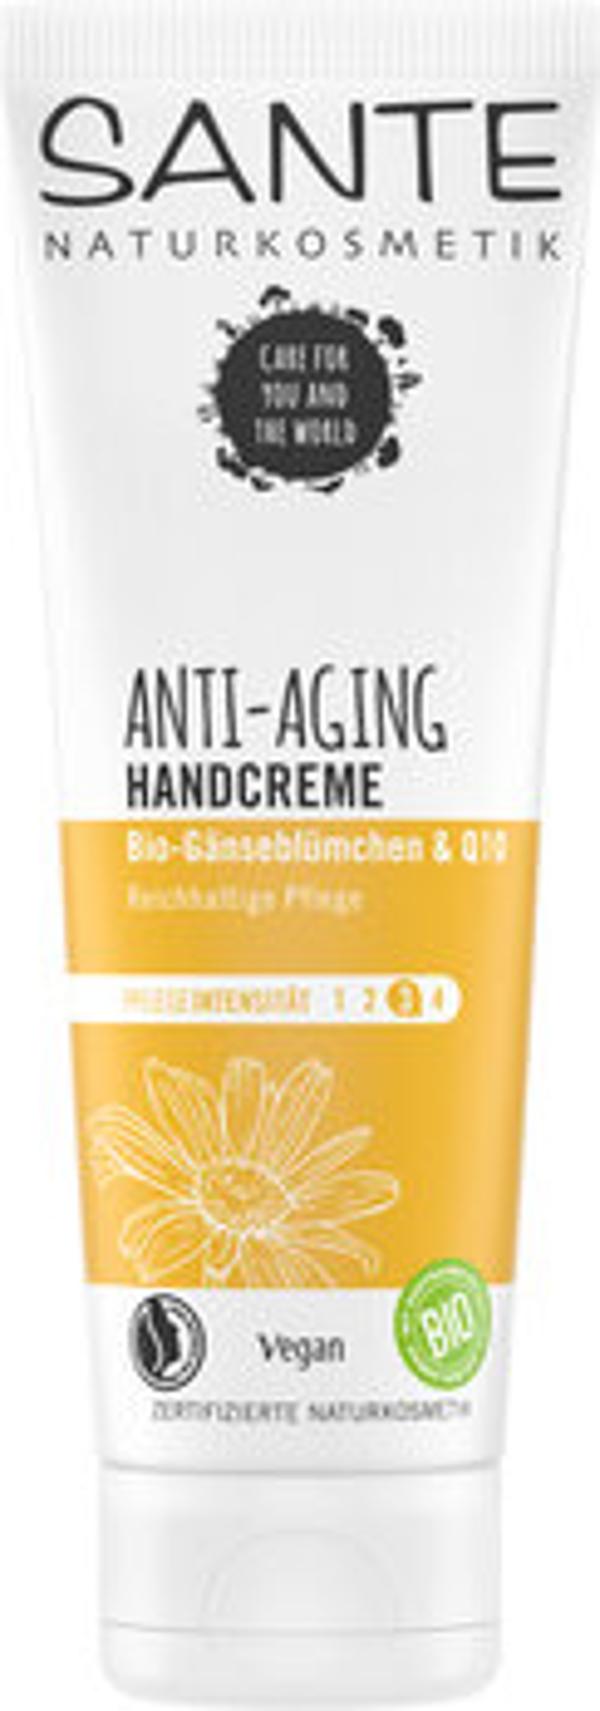 Produktfoto zu ANTI AGING Handcreme Gänseblümchen & Q10 75ml